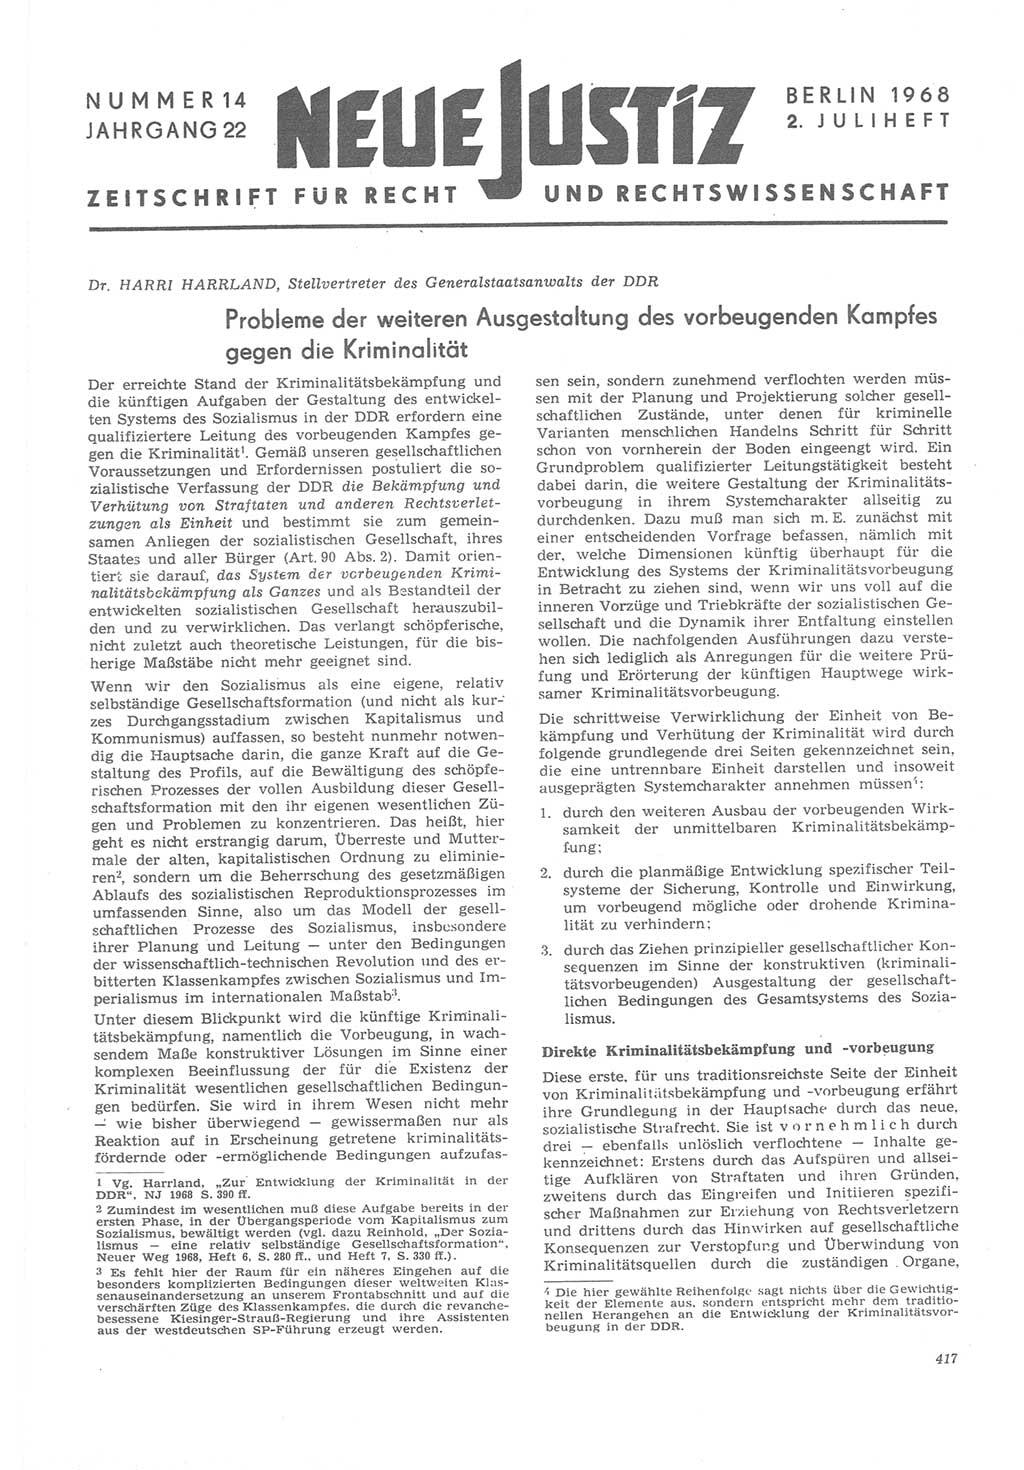 Neue Justiz (NJ), Zeitschrift für Recht und Rechtswissenschaft [Deutsche Demokratische Republik (DDR)], 22. Jahrgang 1968, Seite 417 (NJ DDR 1968, S. 417)